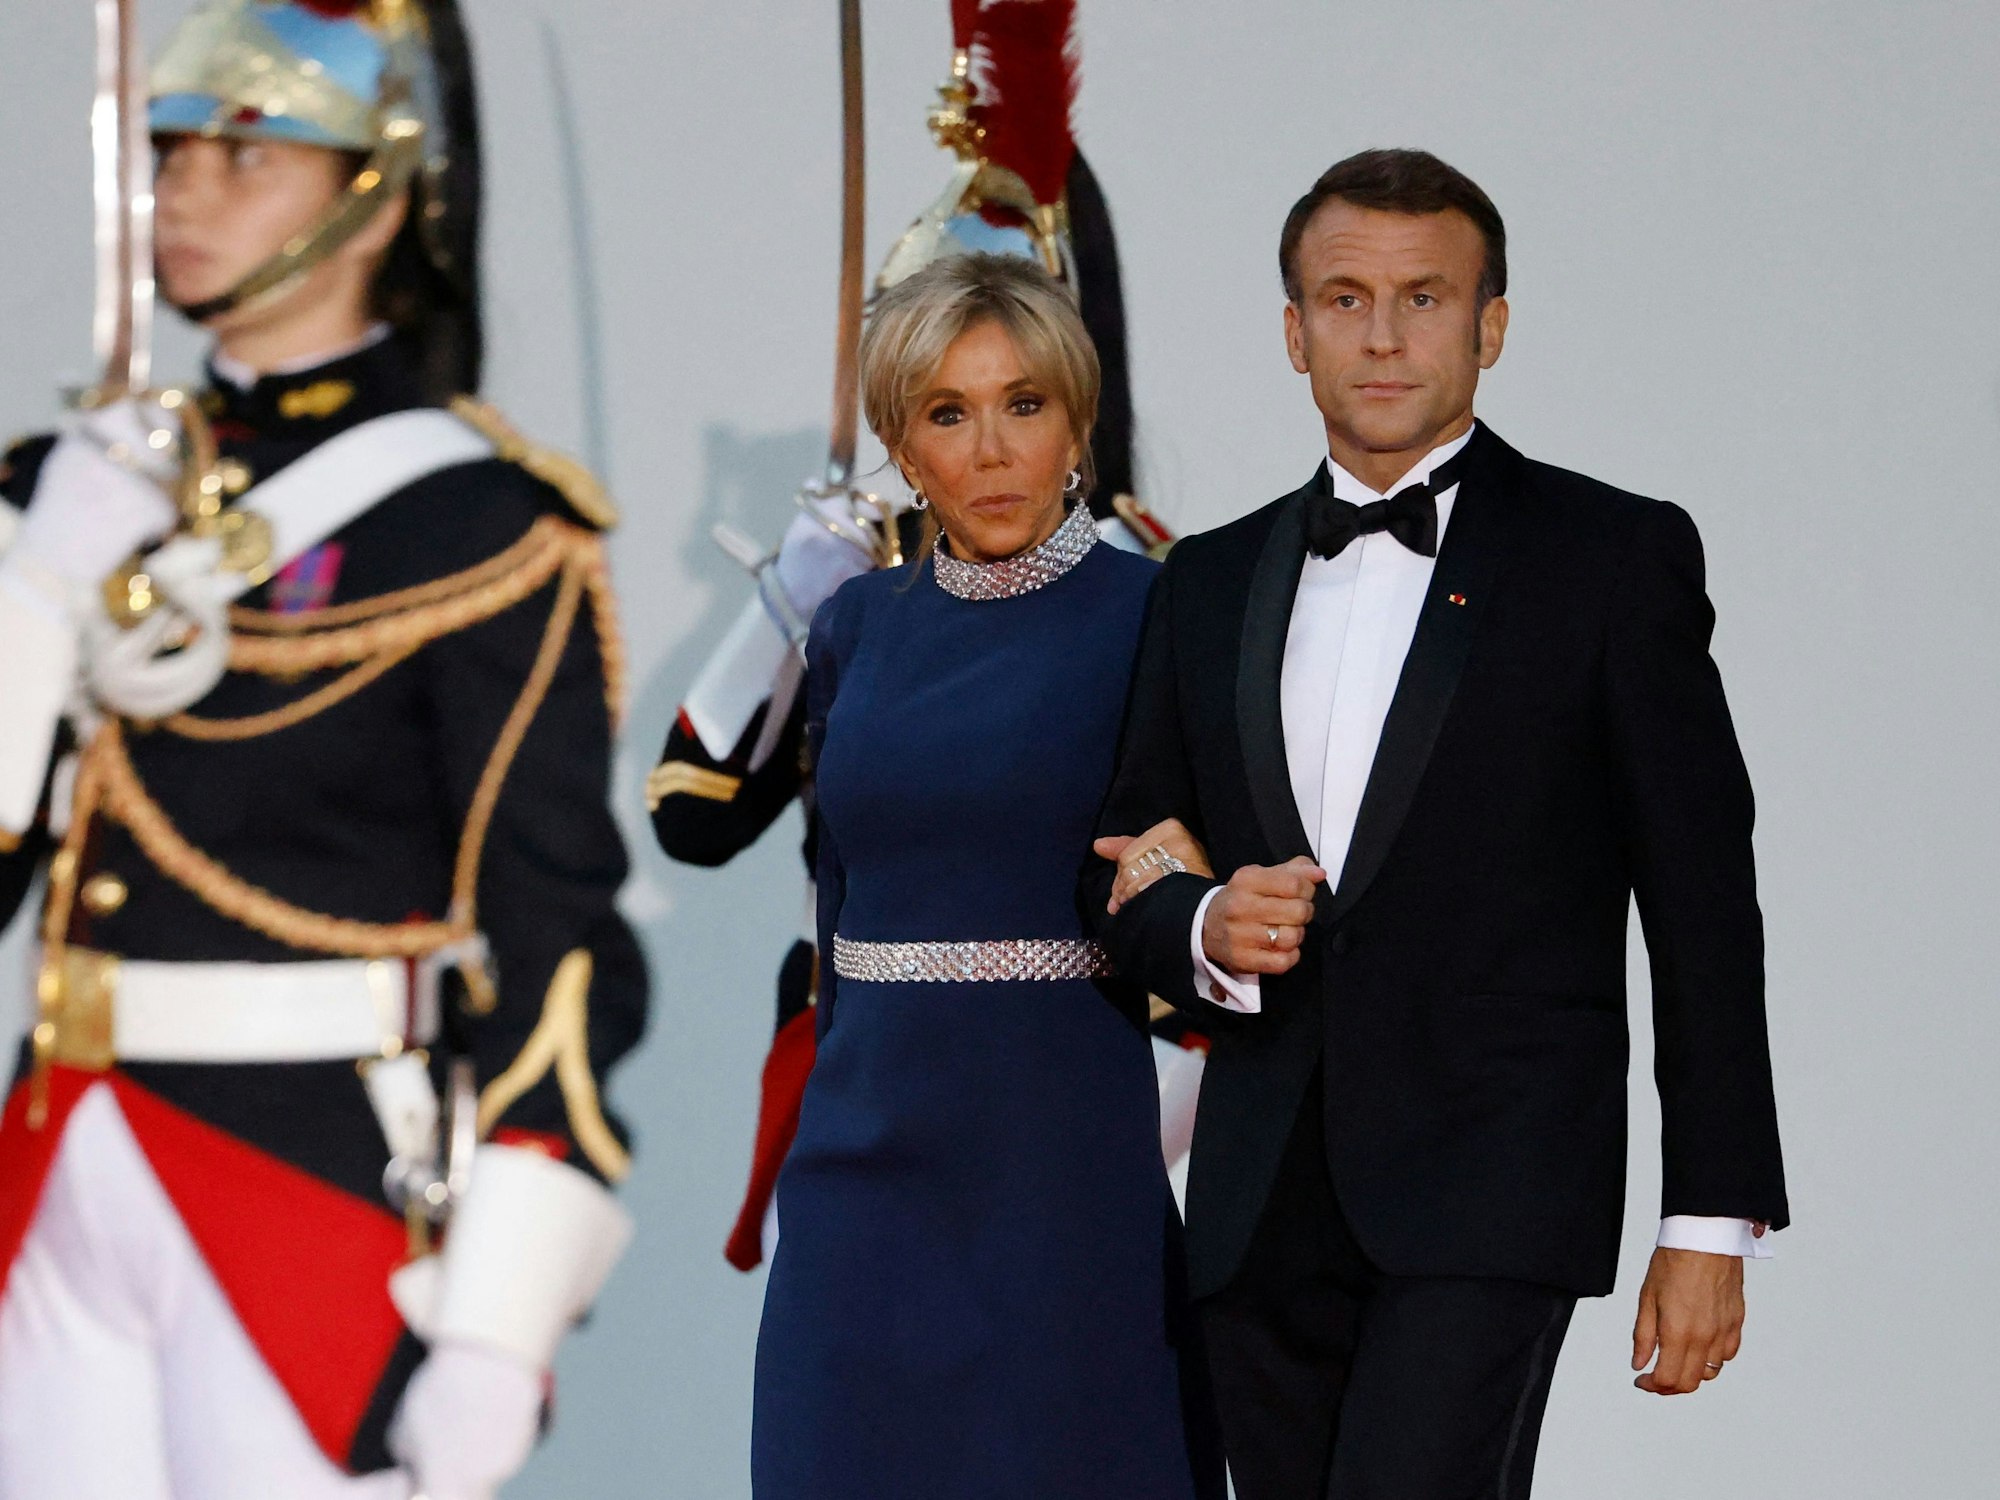 Der französische Präsident Emmanuel Macron und seine Frau Brigitte Macron empfangen den britischen König Charles III. und seine Frau Camilla.